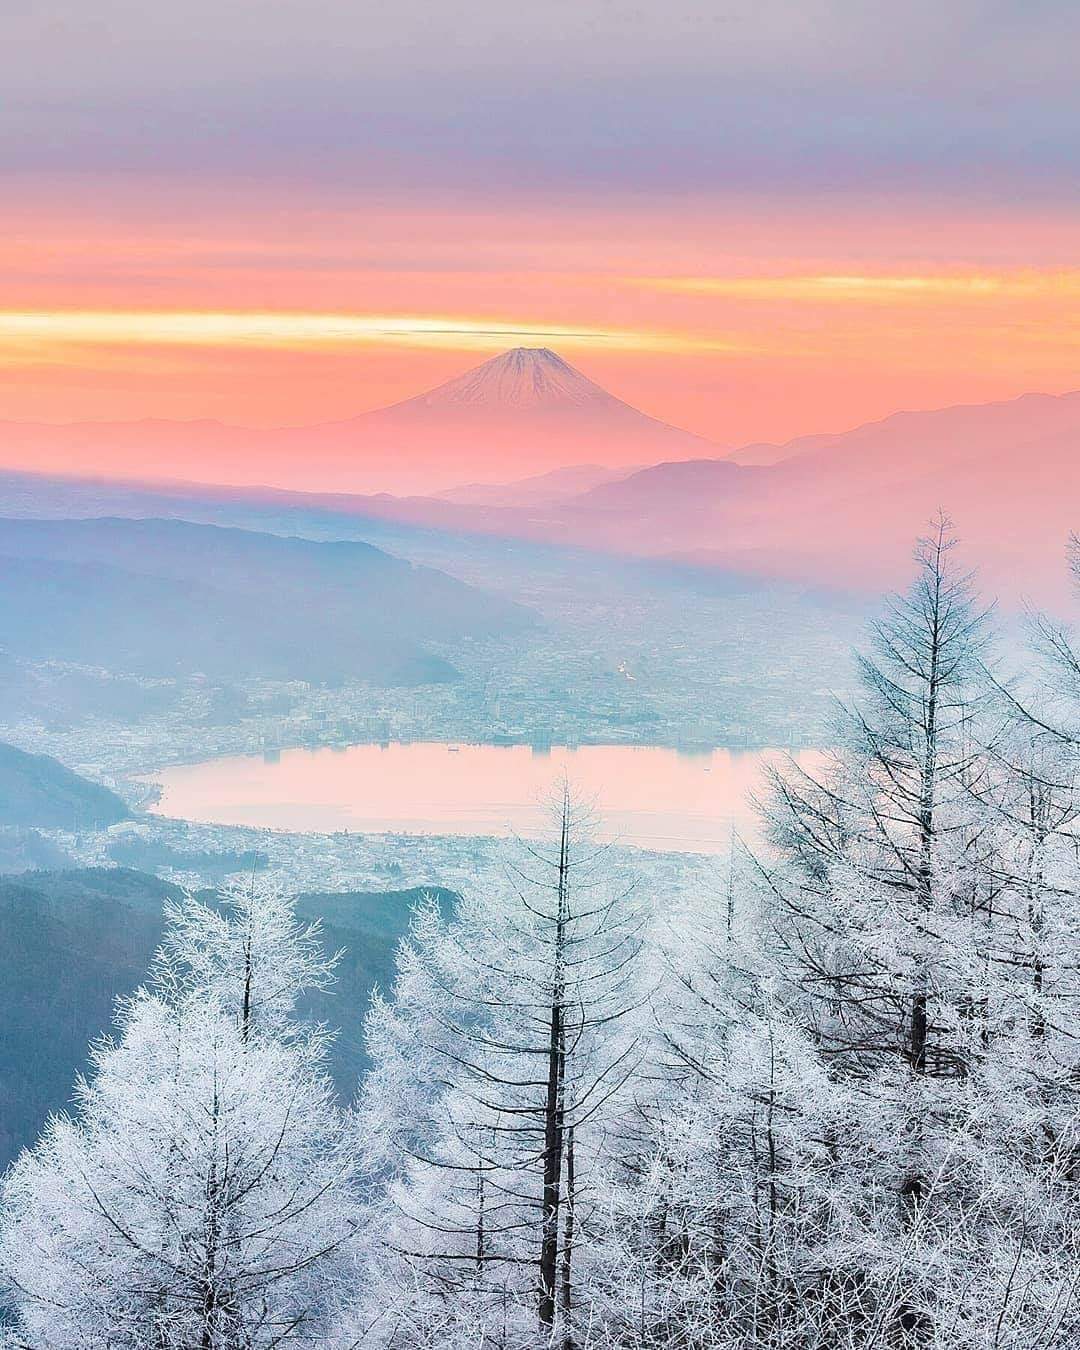 Mount Fuji as winter approaches.